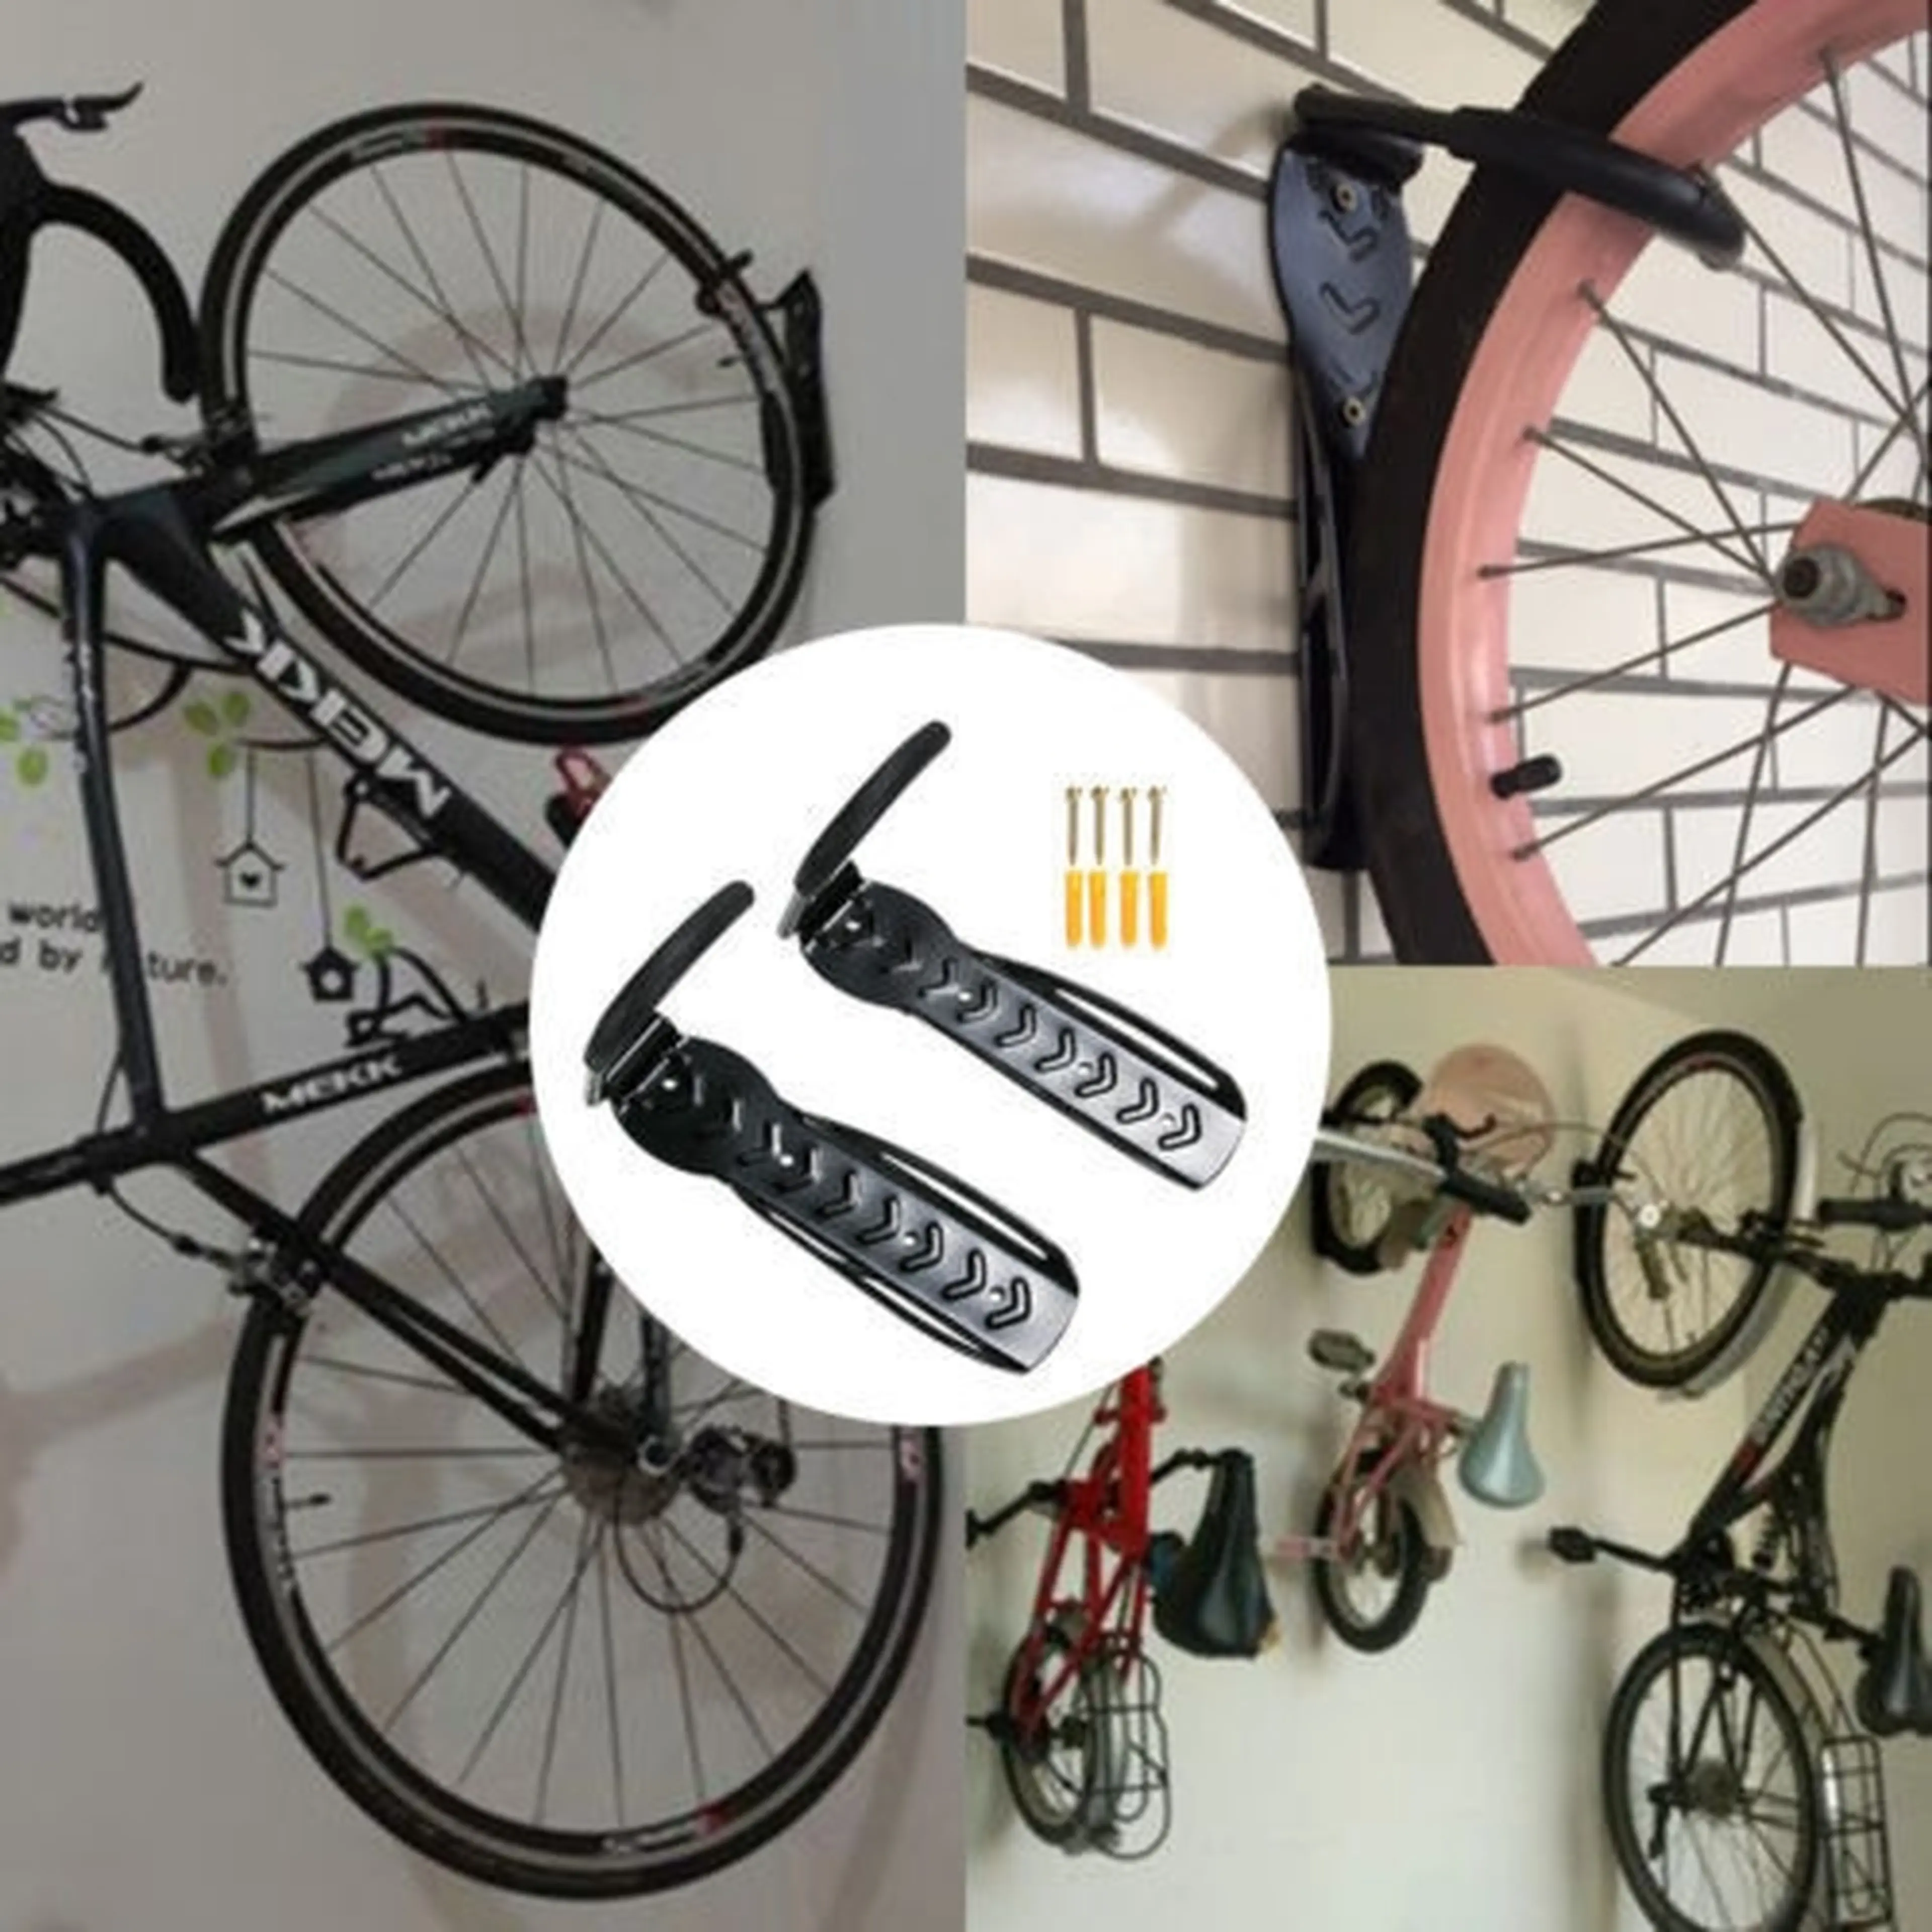 2. Suport pentru biciclete montaj pe perete suporta pana la 30kg